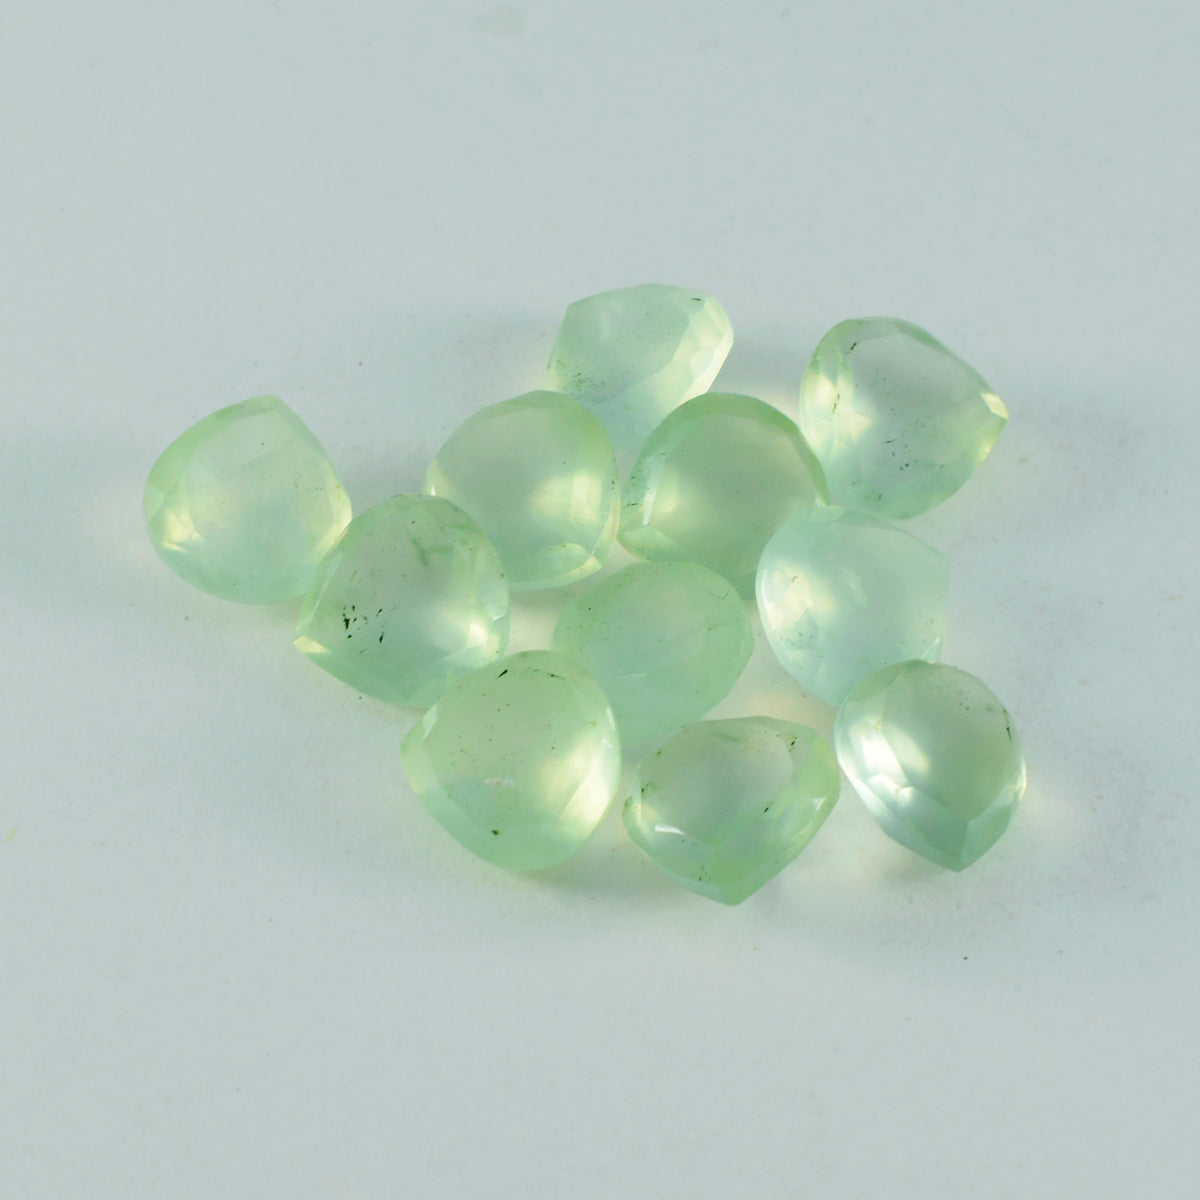 riyogems 1шт зеленый пренит граненый 6x6 мм в форме сердца потрясающего качества, свободный камень